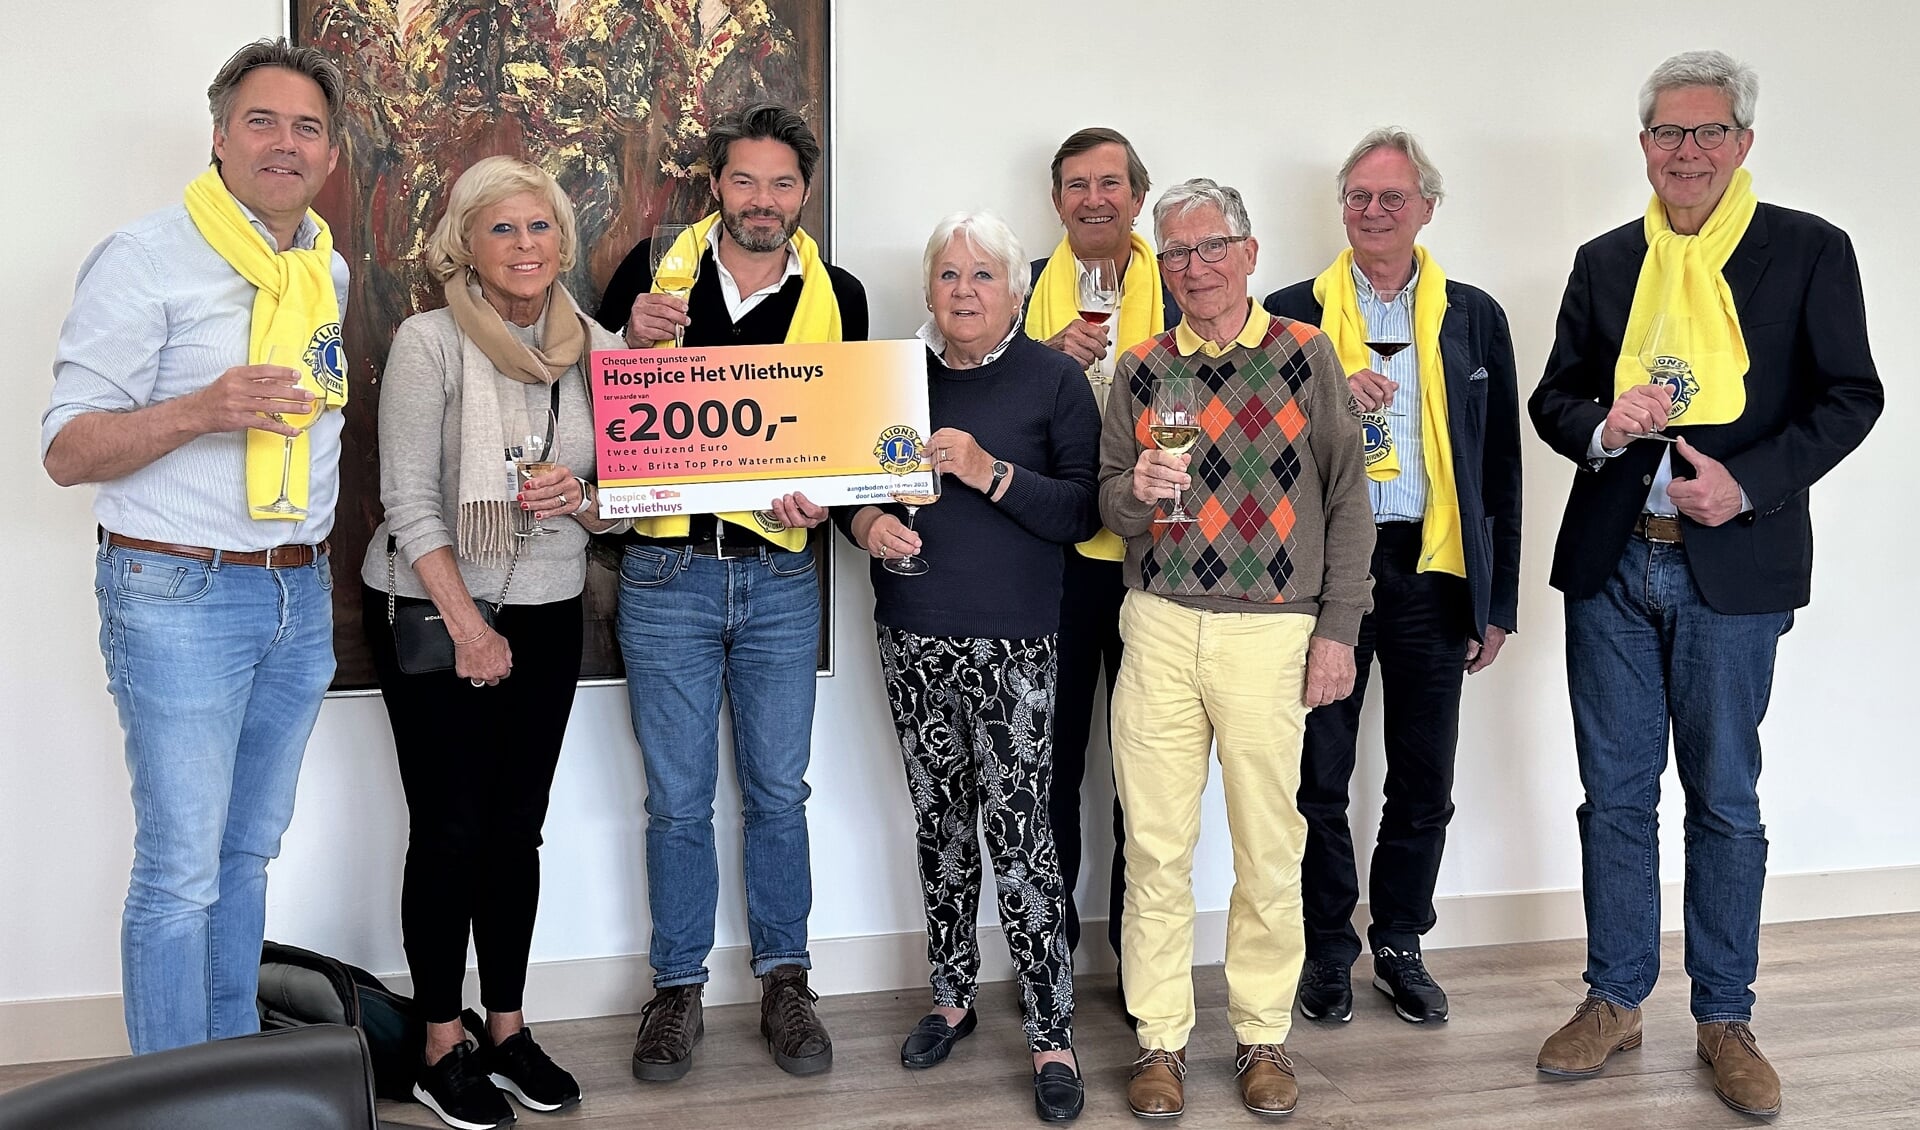 Blije gezichten alom in het Vliethuys dankzij de prachtige donatie van Lions Voorburg (foto: Marcel van Heuvel).